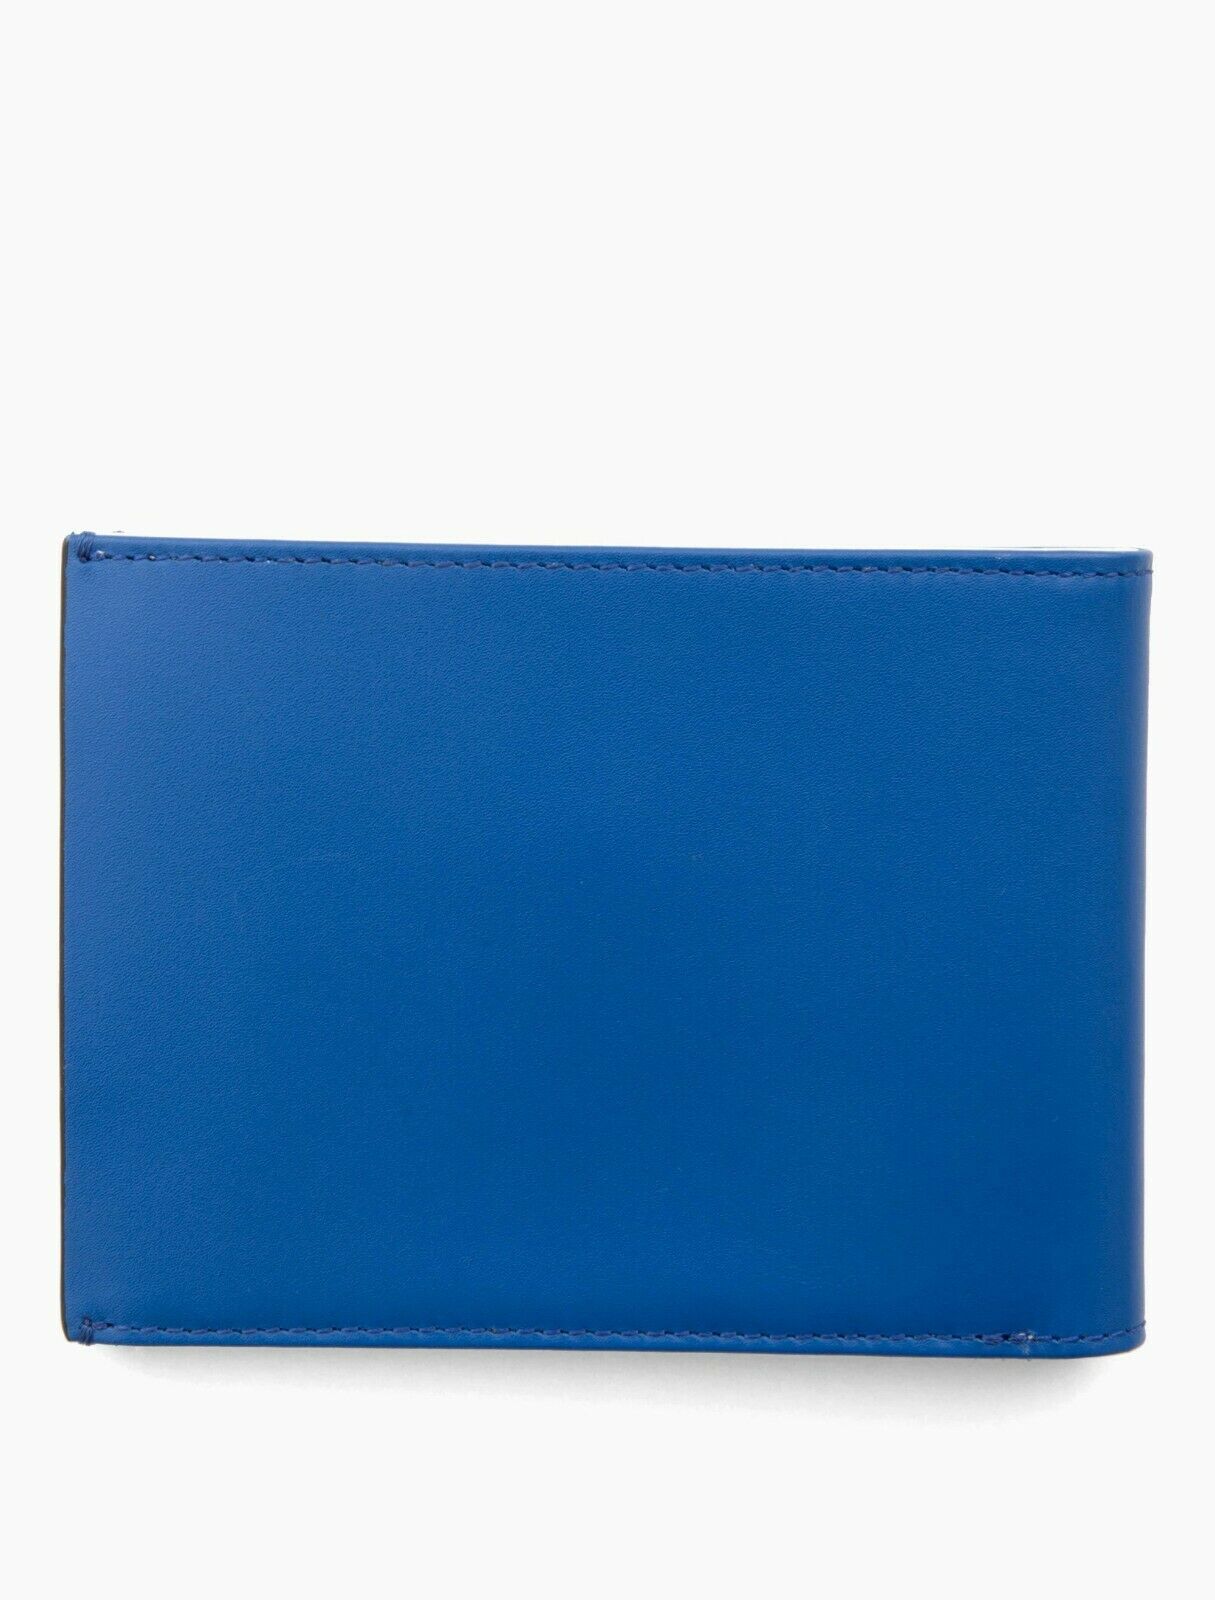 calvin klein wallet blue